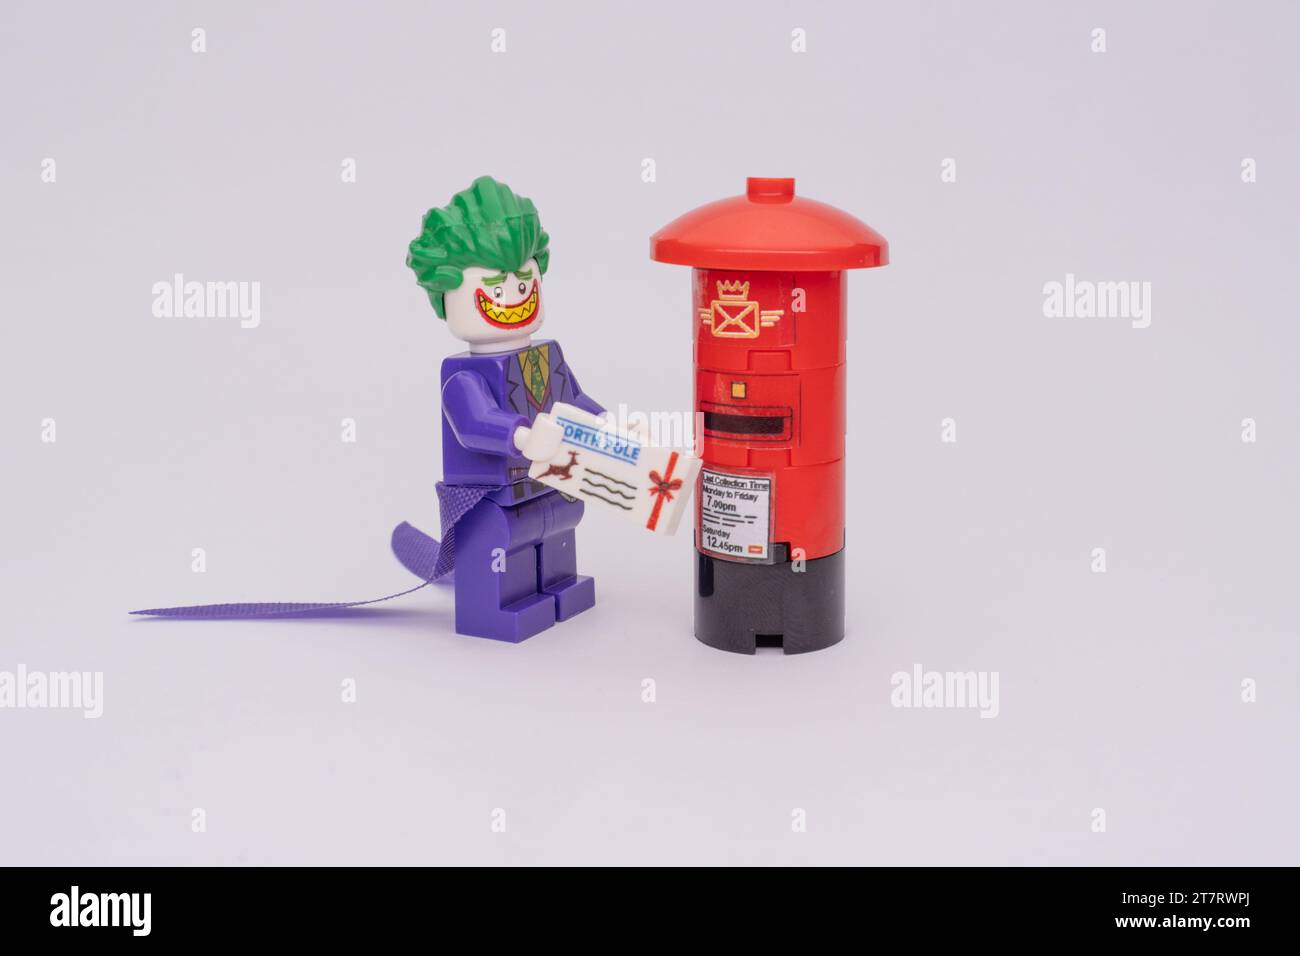 Una minifigura LEGO di Joker in piedi vicino a una cabina telefonica rossa, che tiene la posta in mano. Foto Stock